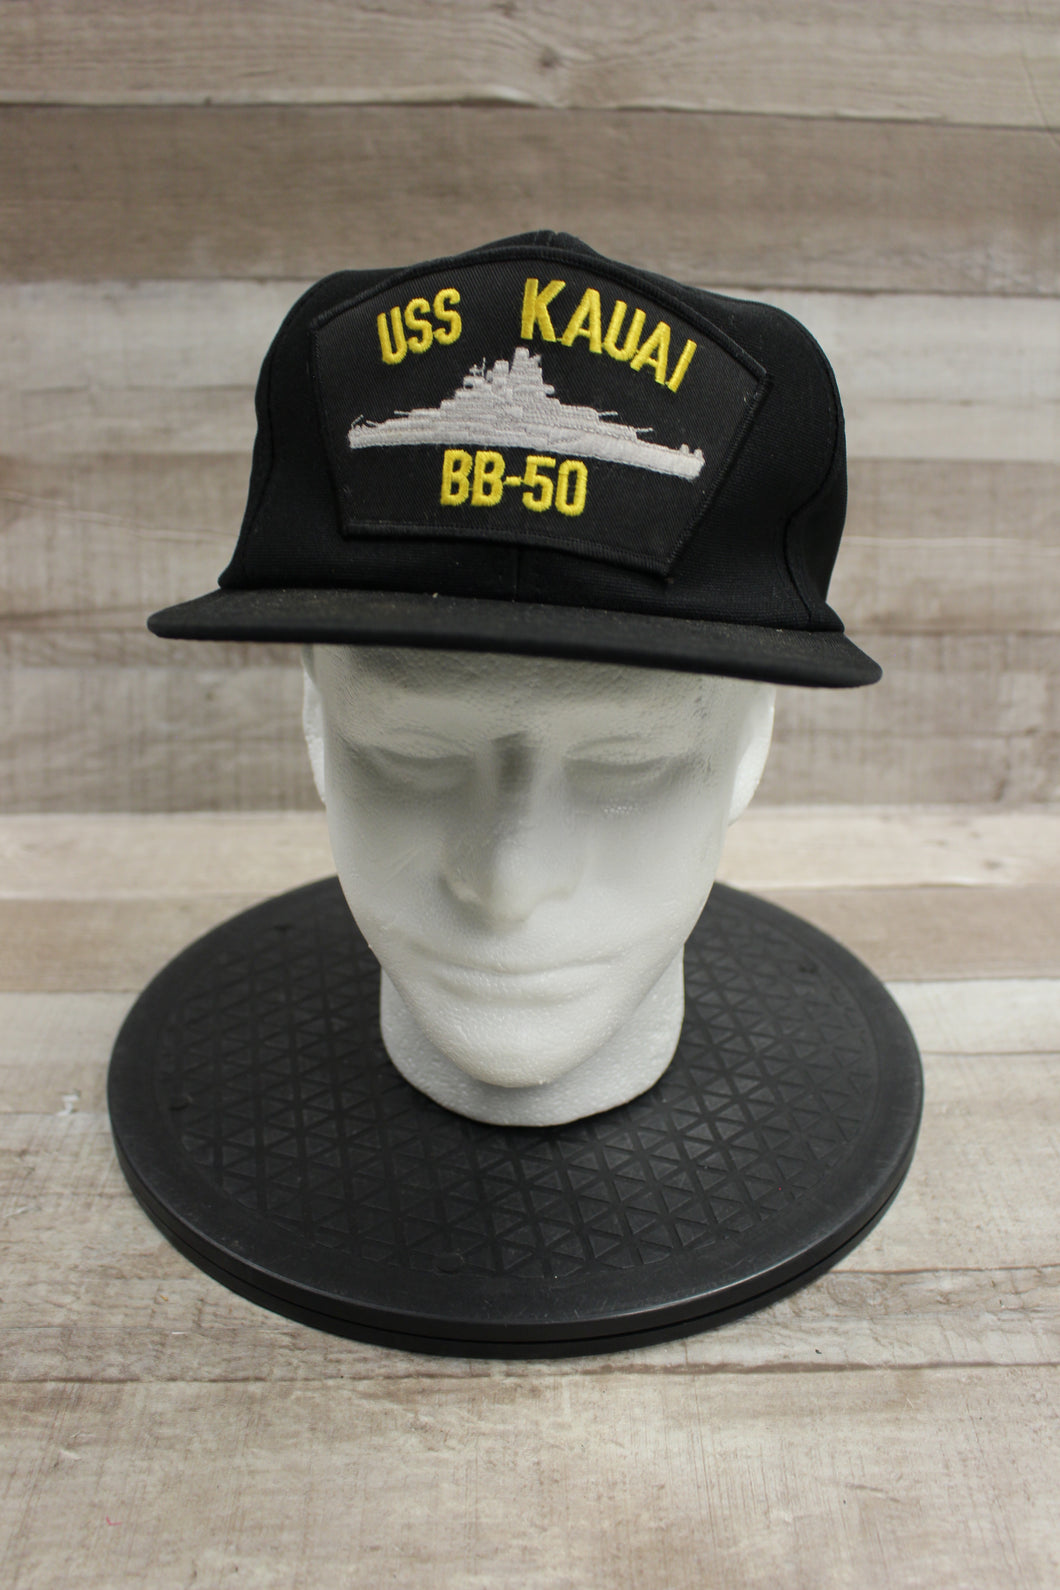 USS Kauai BB-50 Adjustable Snapback Cap Hat -Used